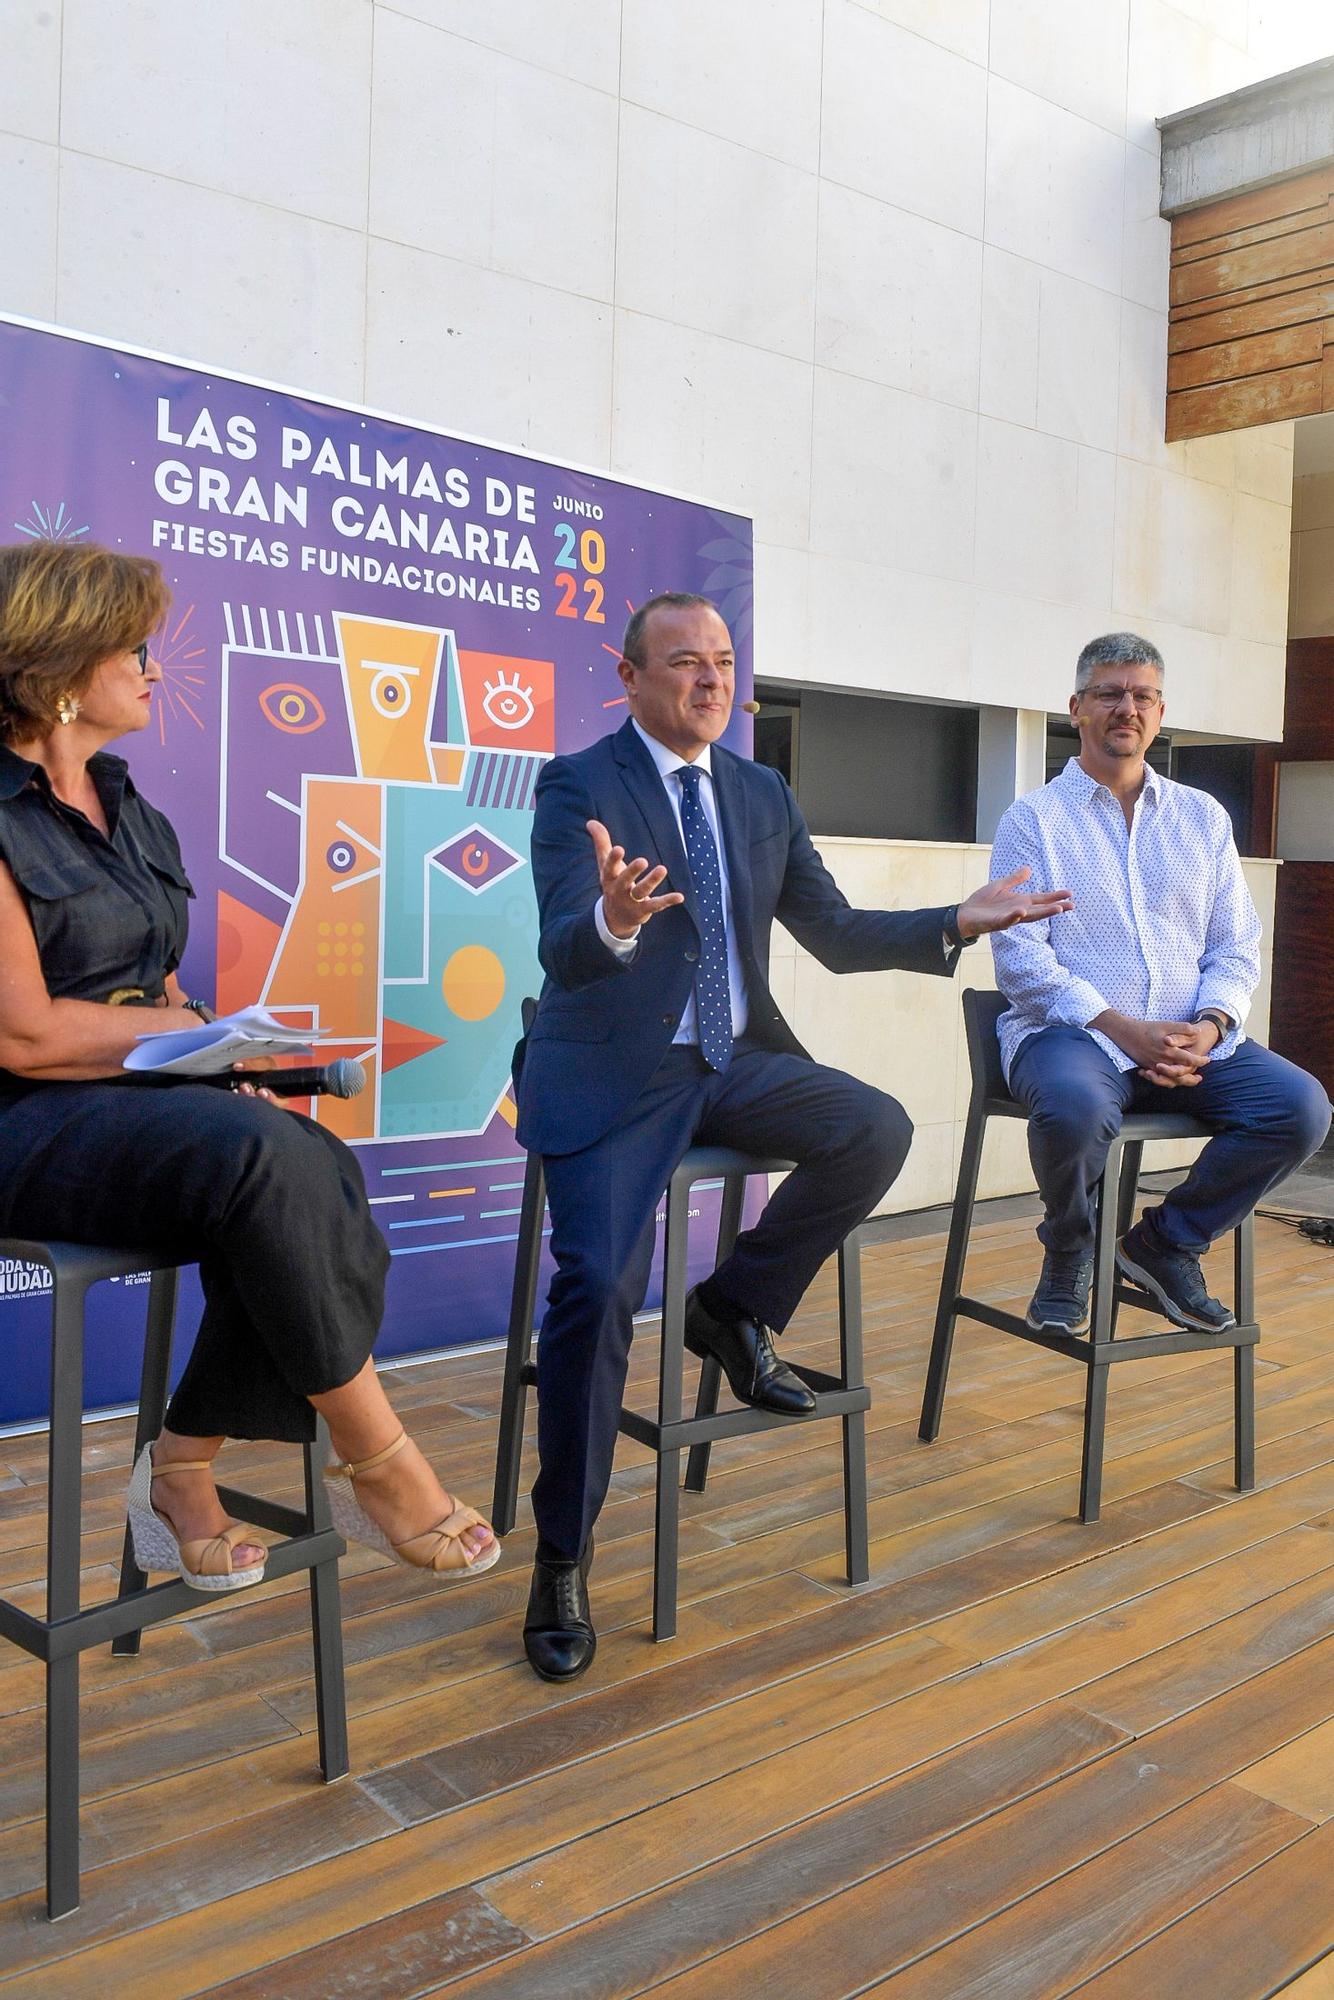 Presentación programa de las Fiestas Fundacionales de Las Palmas de Gran Canaria